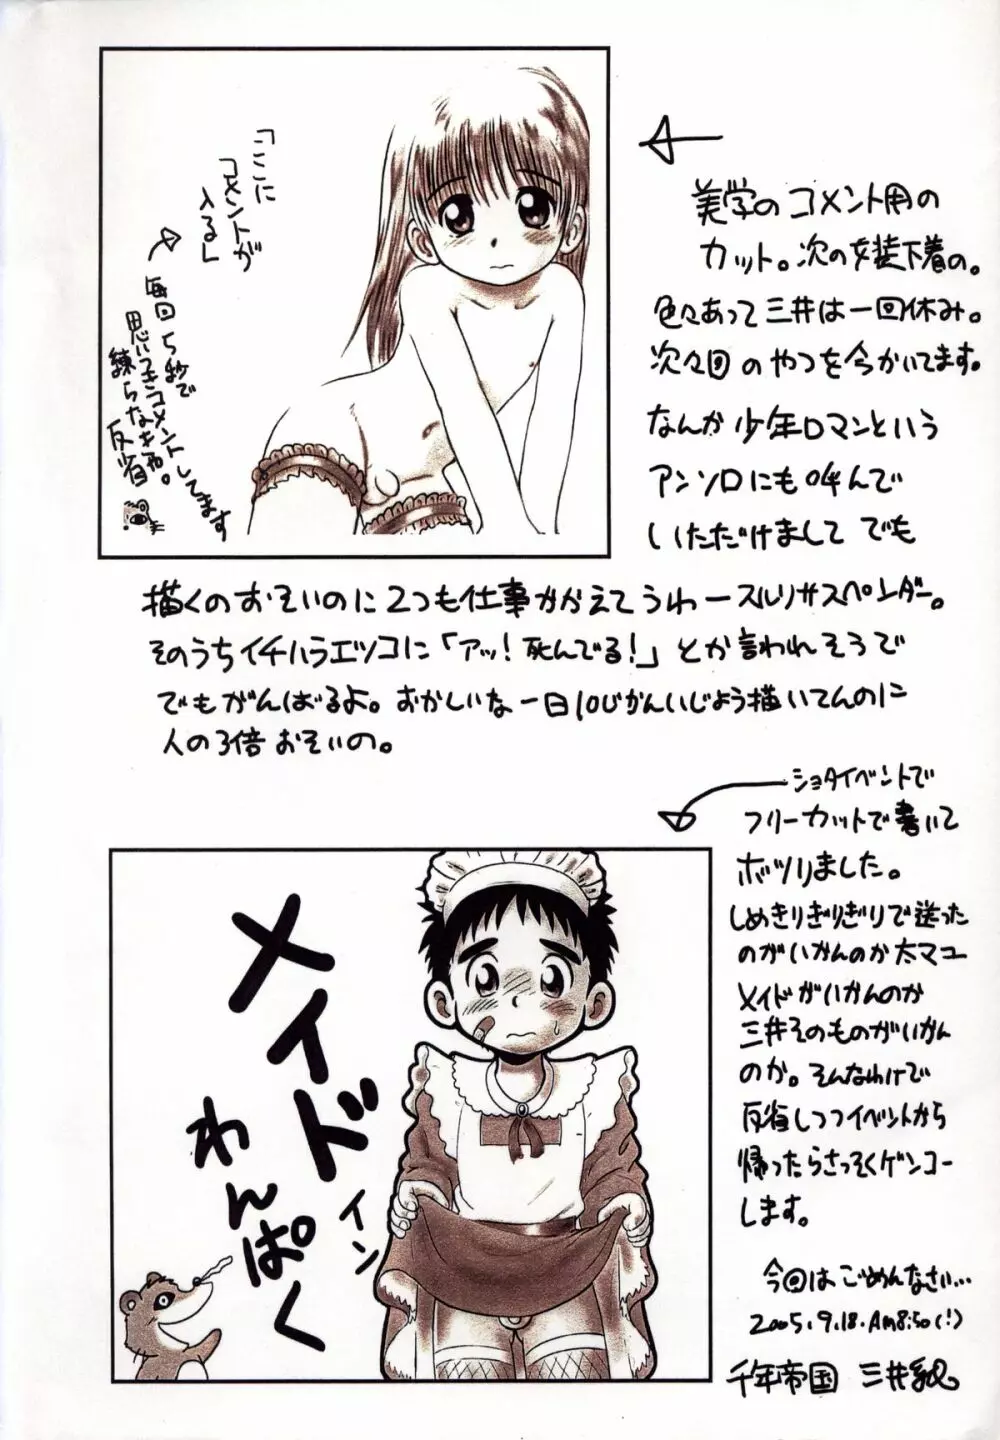 Mitsui Jun – Gash-kun no Nakayoshi & 2005 Free Sample 19ページ